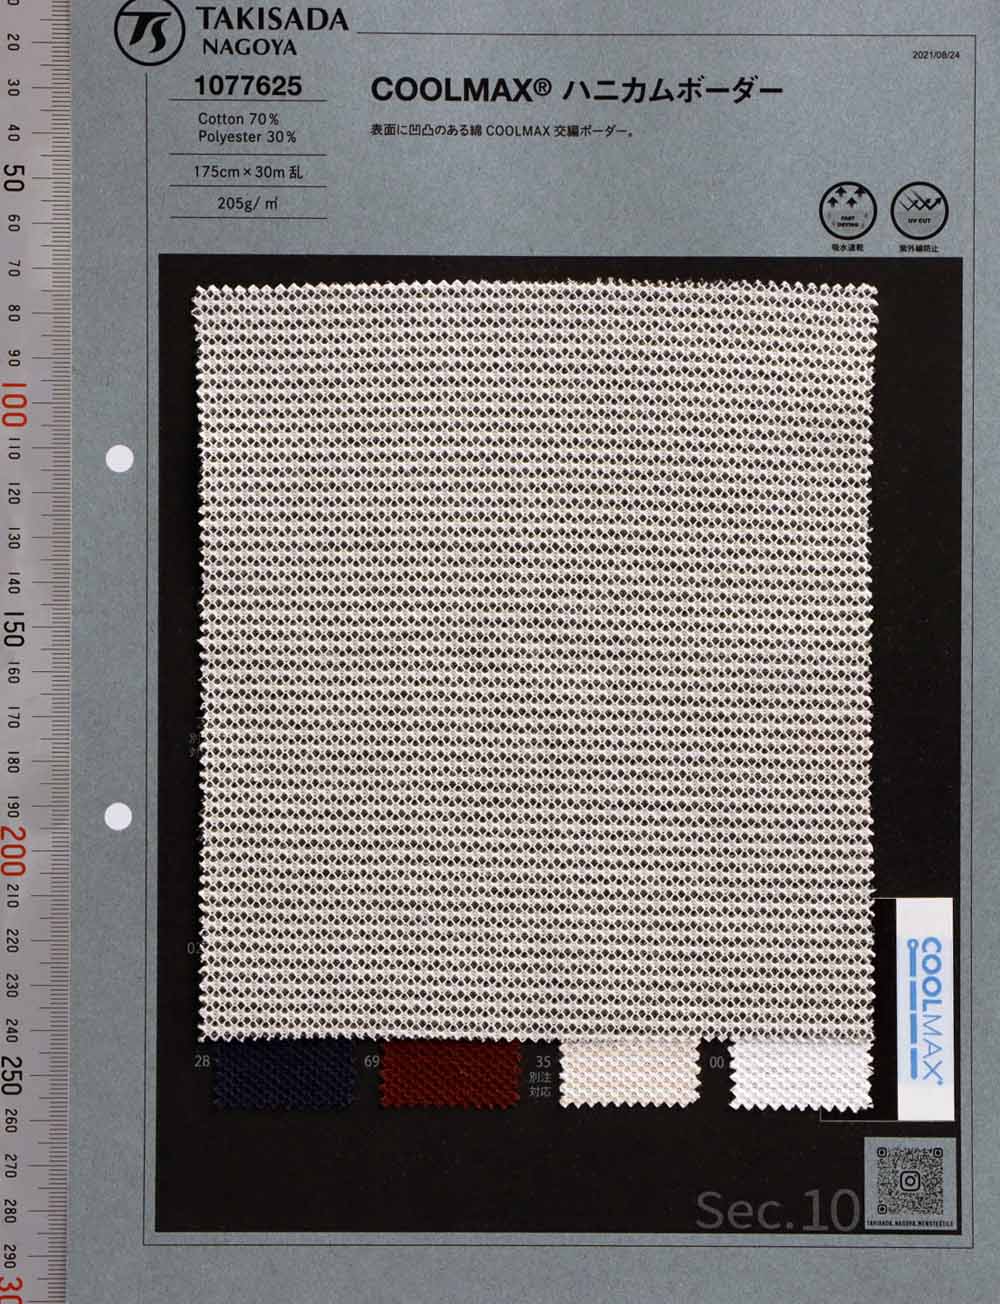 1077625 Listras Horizontais De Algodão COOLMAX® Honeycomb[Têxtil / Tecido] Takisada Nagoya